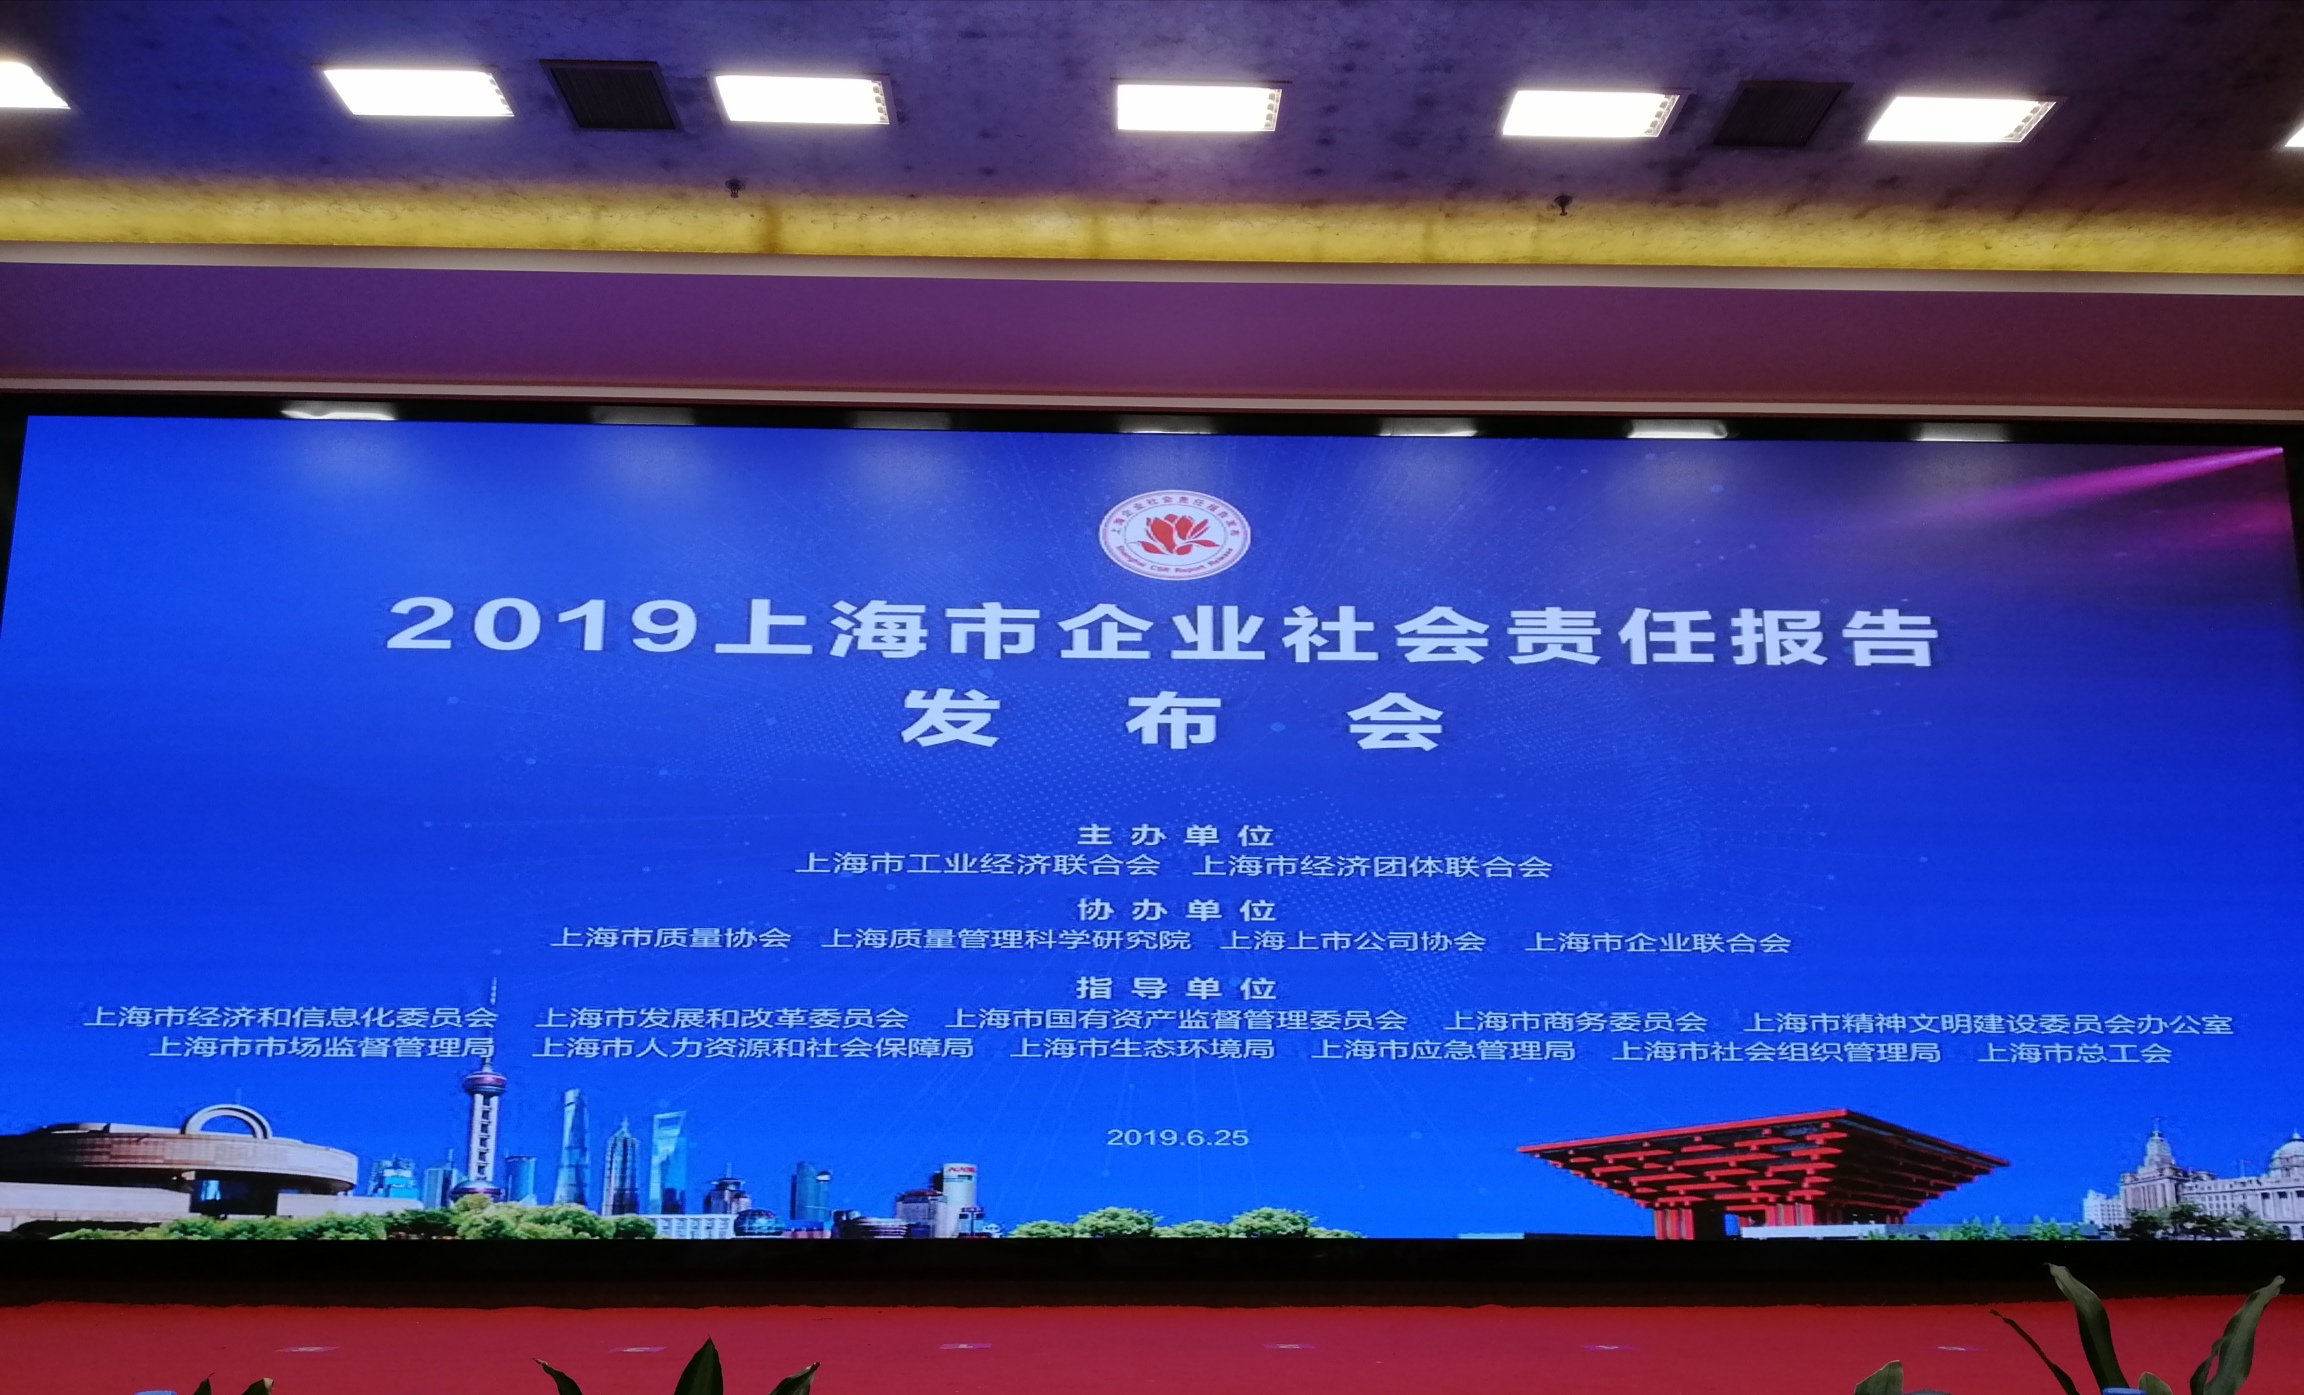 热烈祝贺2019上海市企业社会责任报告发布会取得圆满成功——德诺检测第五次上榜了